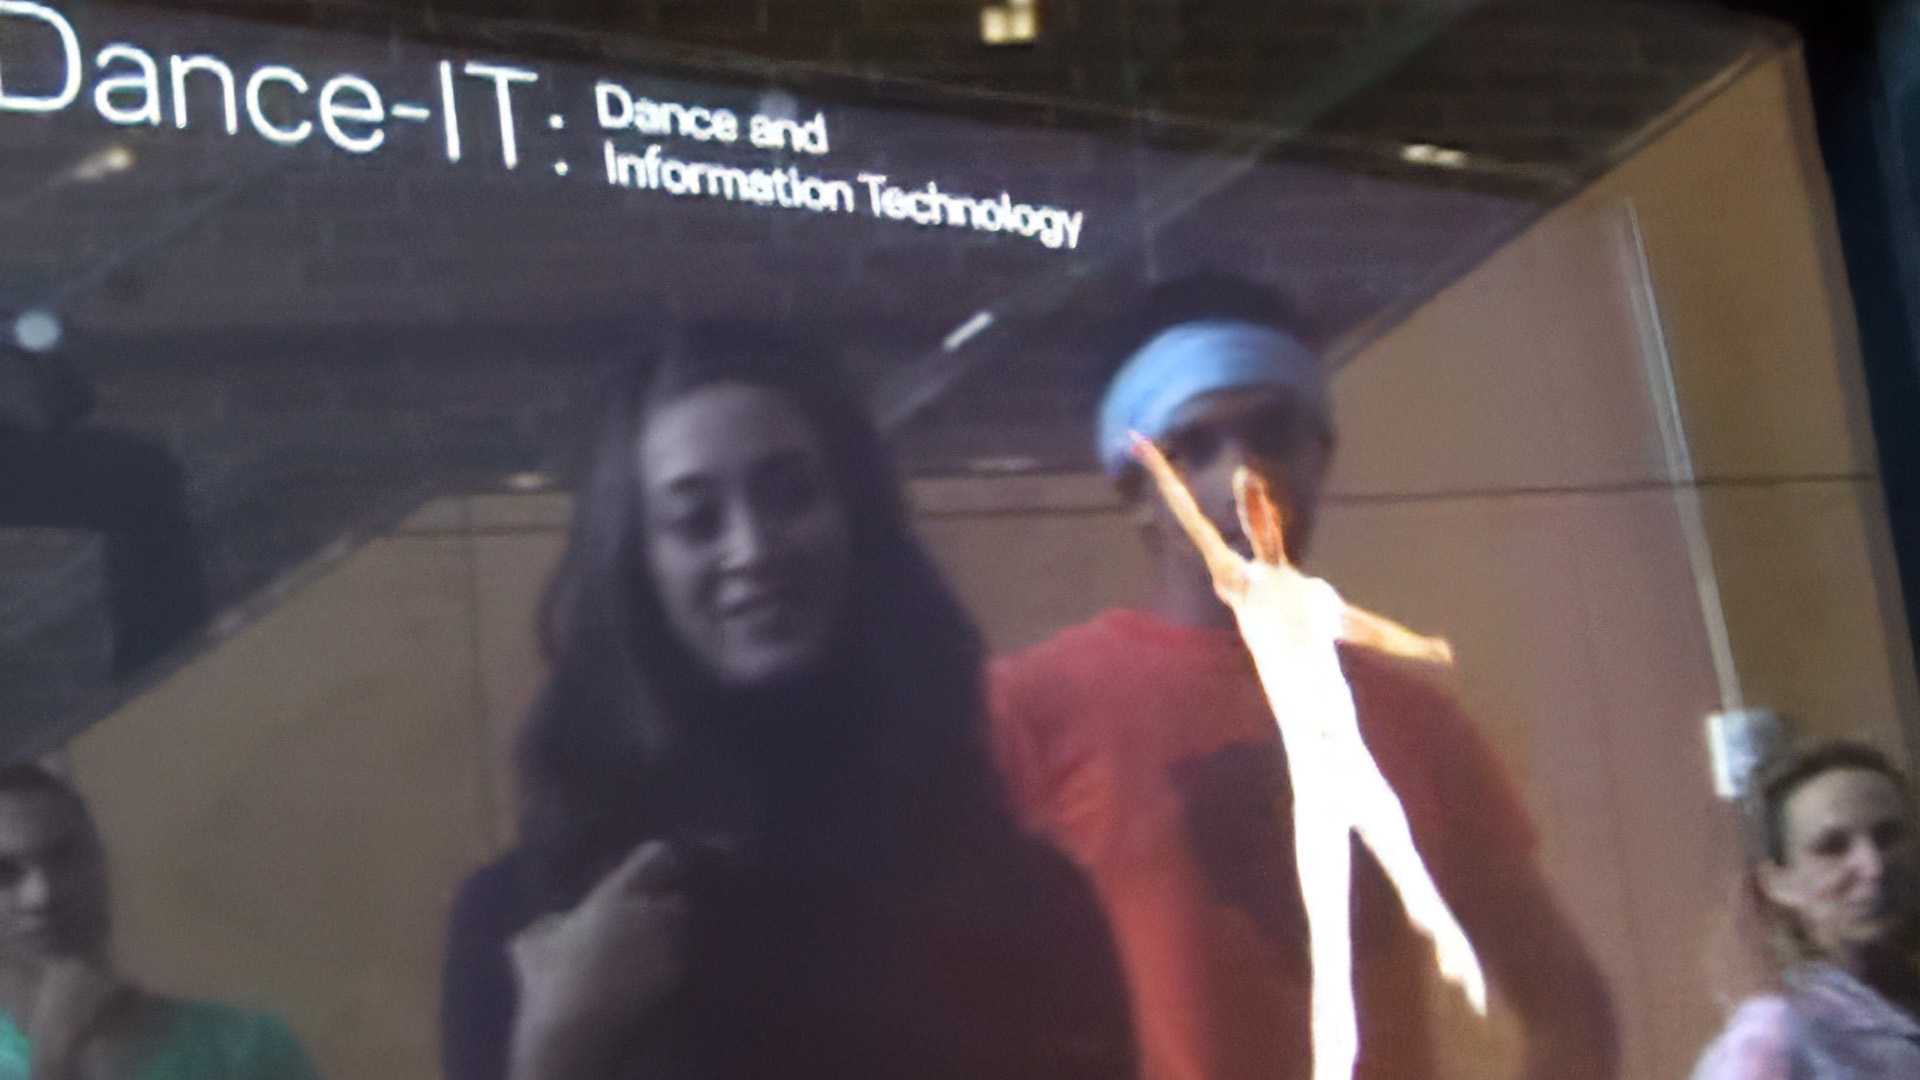 Dance-IT